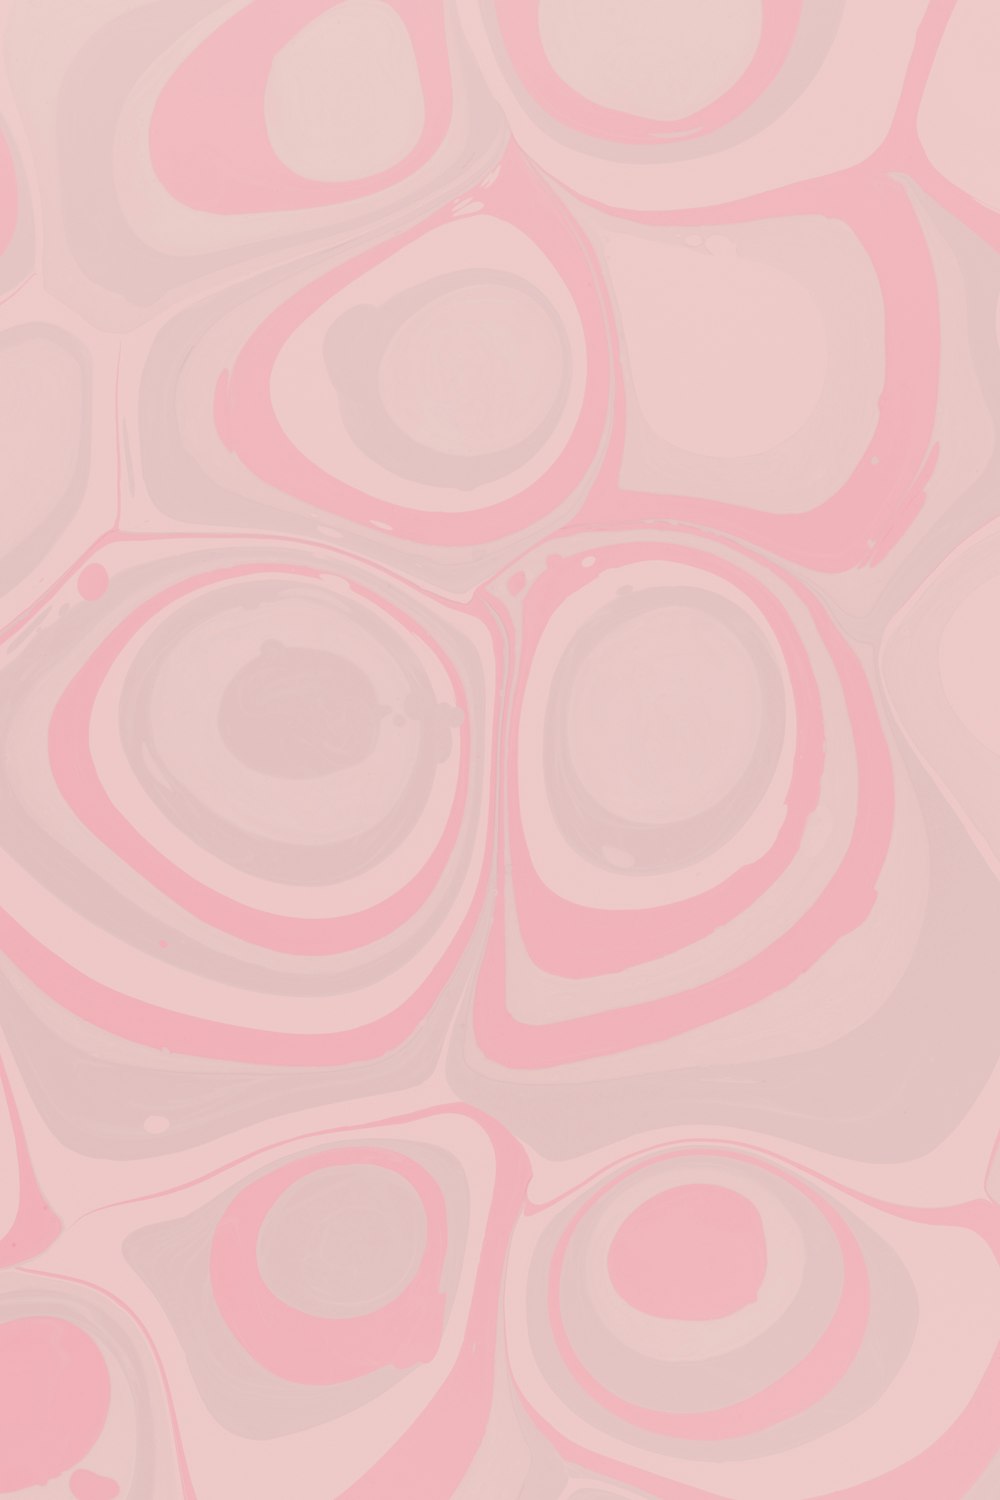 Ilustración de corazón rosa y blanco